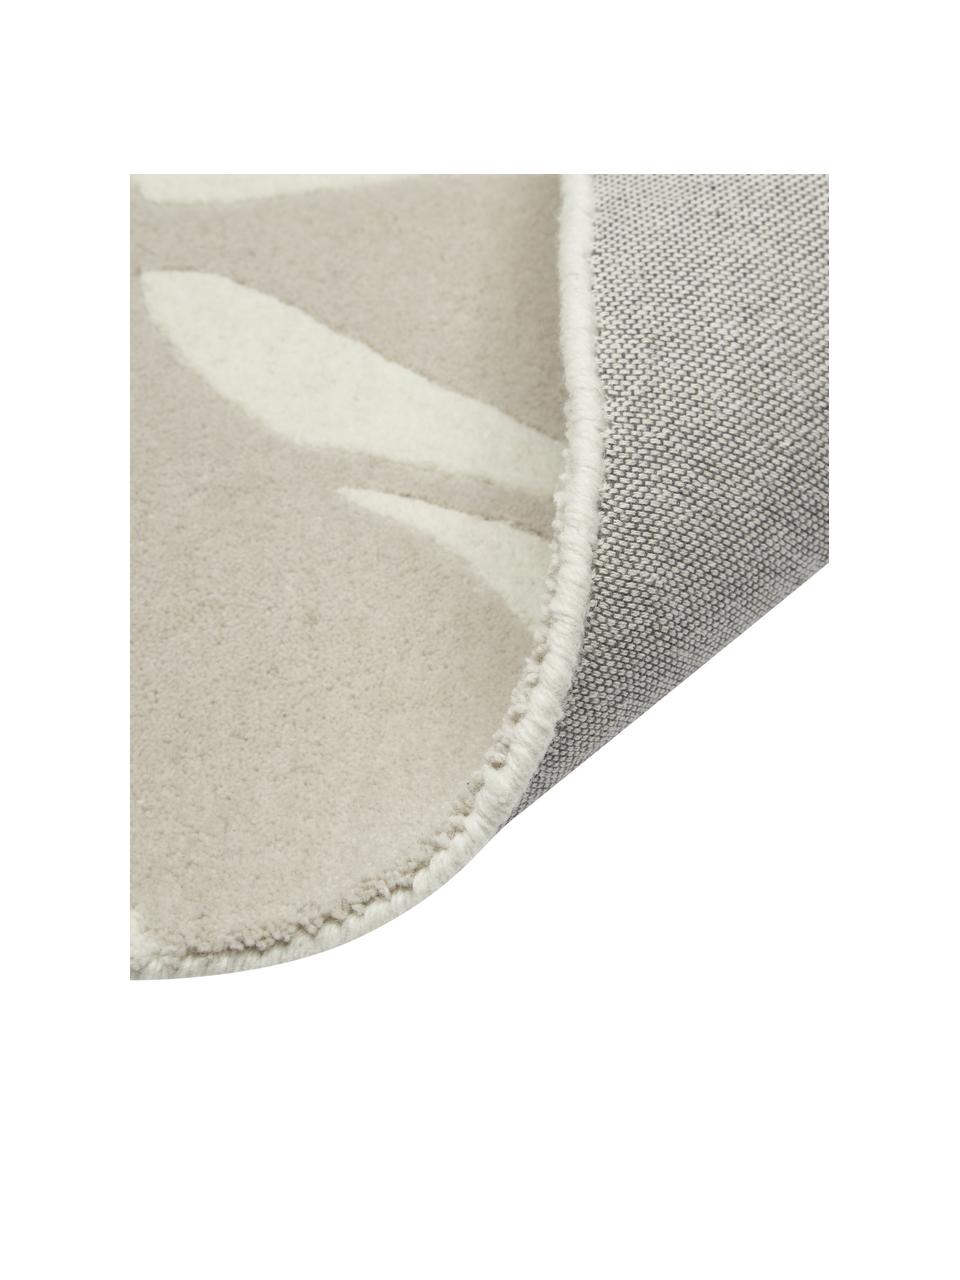 Ručně tkaný vlněný koberec Lando, 100 % vlna

V prvních týdnech používání vlněných koberců se může objevit charakteristický jev uvolňování vláken, který po několika týdnech používání ustane., Béžová, krémově bílá, Š 80 cm, D 150 cm (velikost XS)